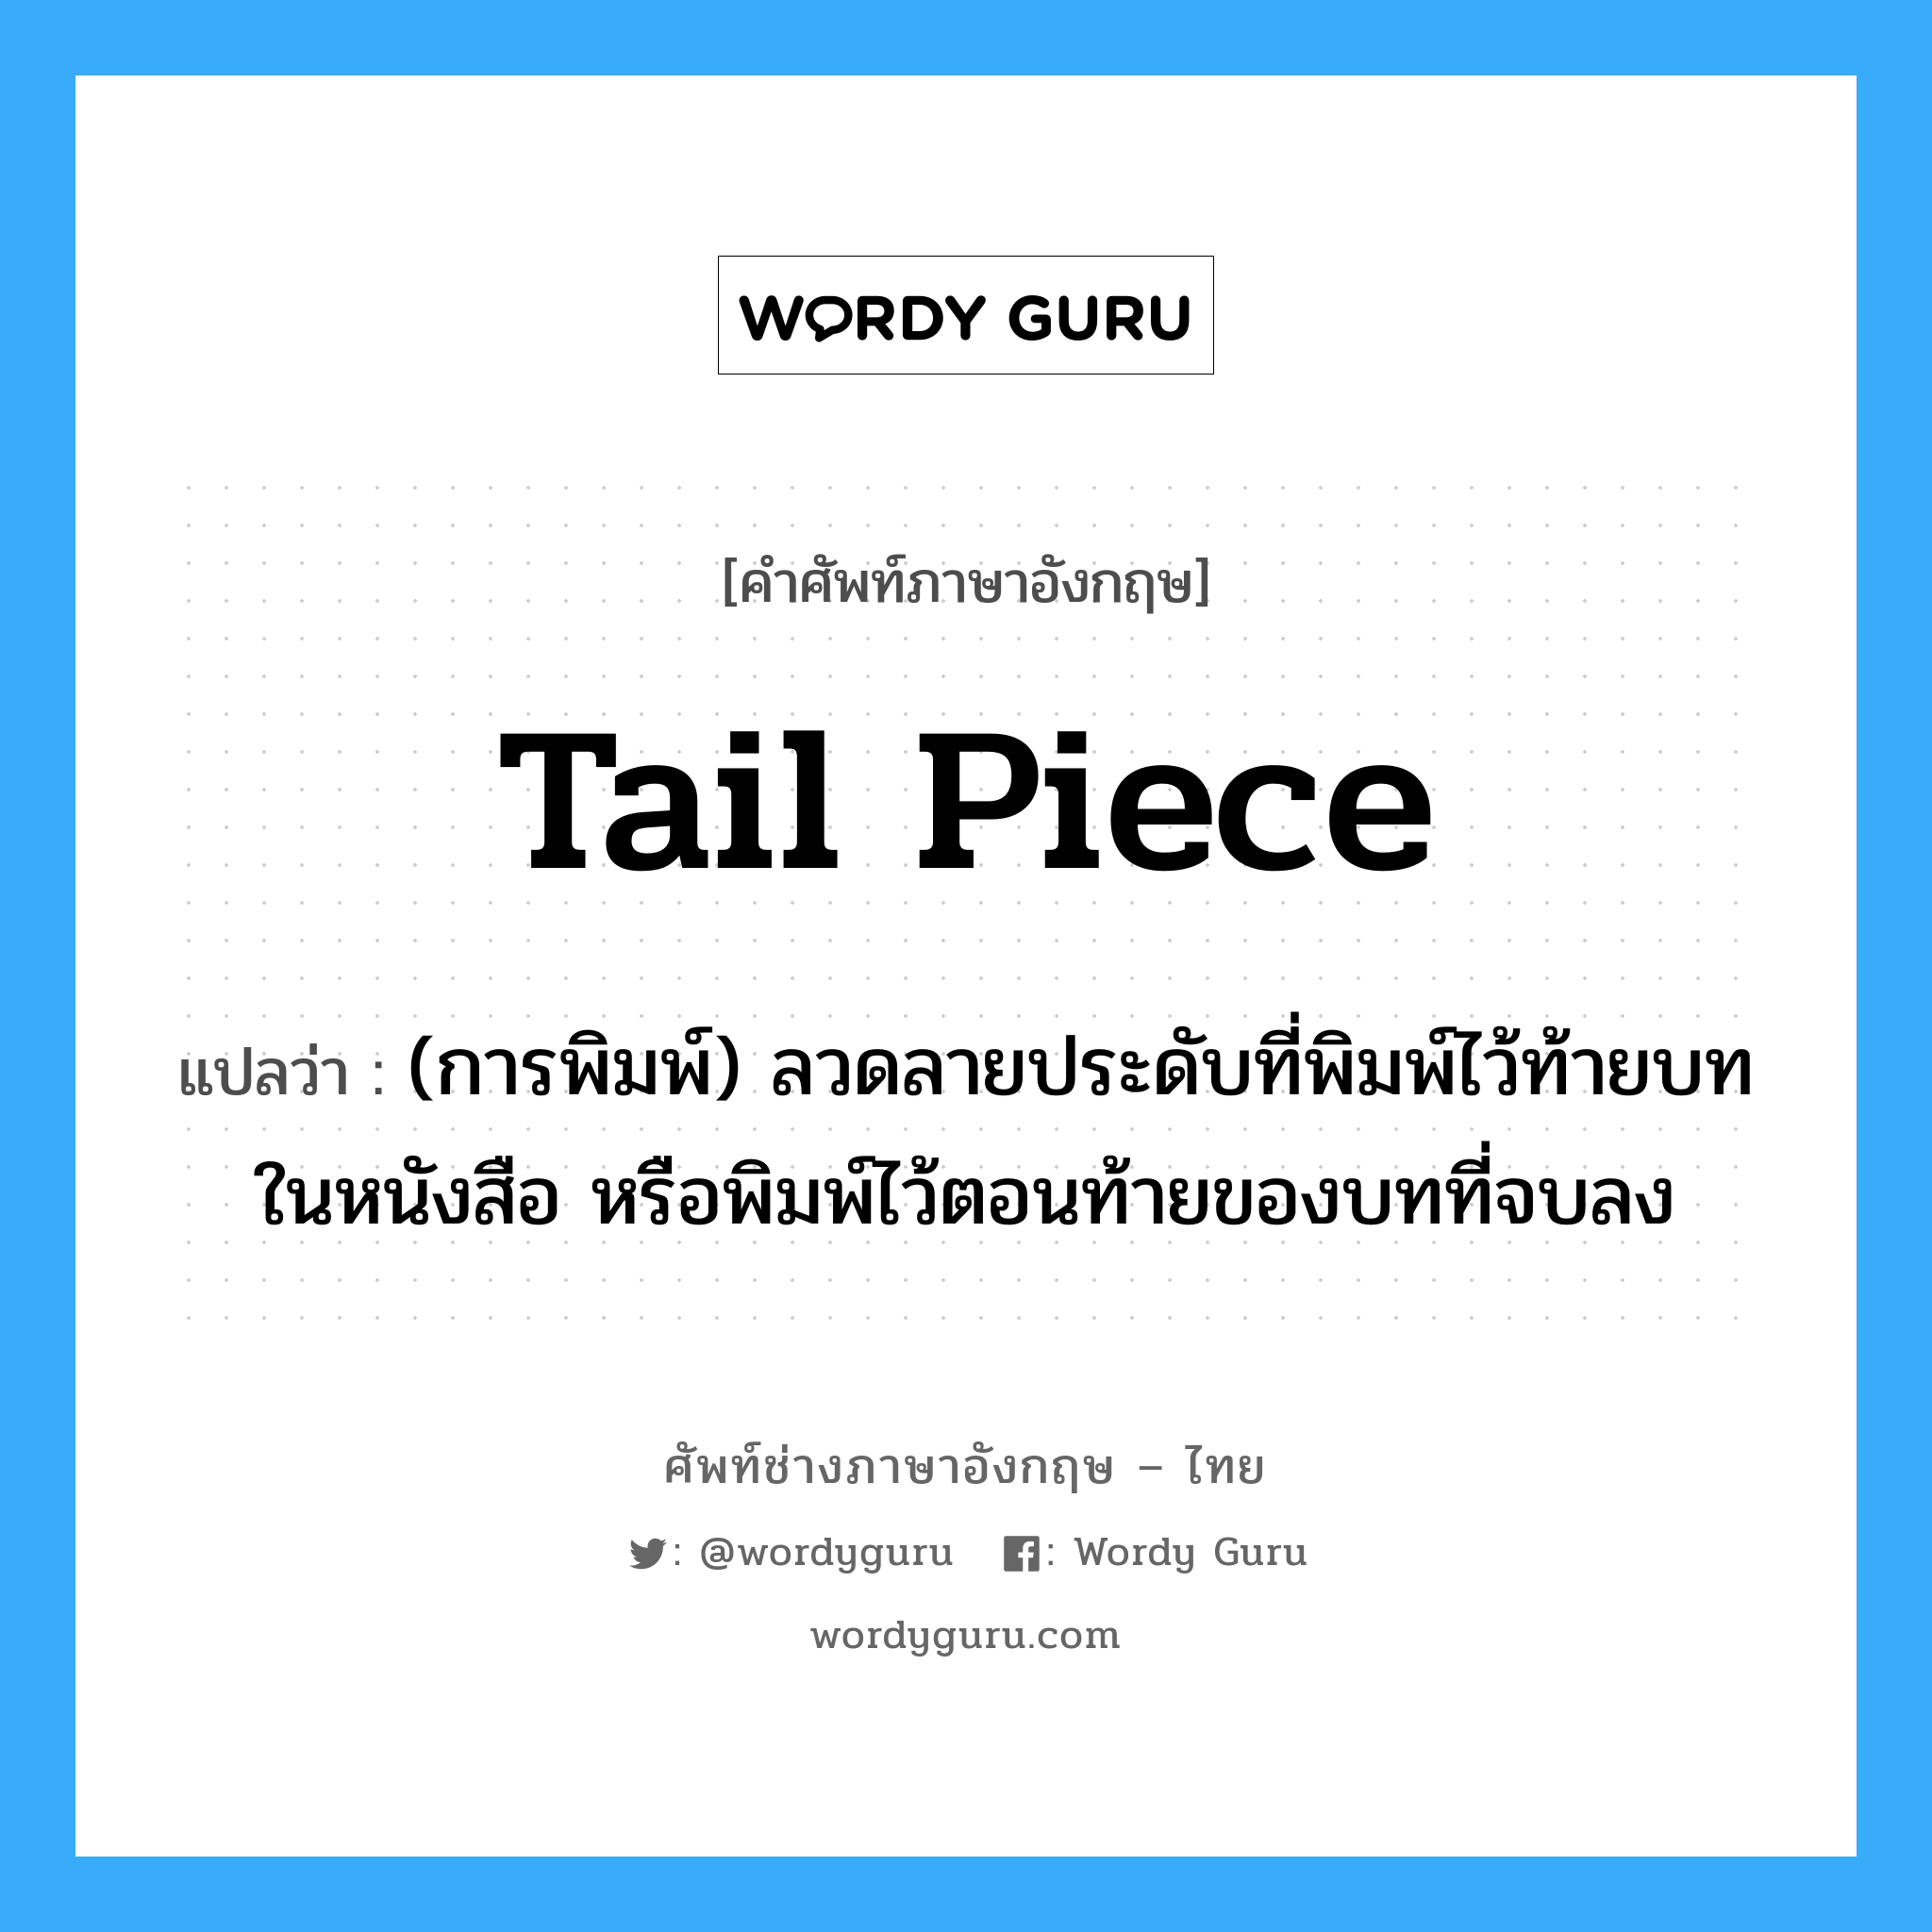 tail piece แปลว่า?, คำศัพท์ช่างภาษาอังกฤษ - ไทย tail piece คำศัพท์ภาษาอังกฤษ tail piece แปลว่า (การพิมพ์) ลวดลายประดับที่พิมพ์ไว้ท้ายบทในหนังสือ หรือพิมพ์ไว้ตอนท้ายของบทที่จบลง